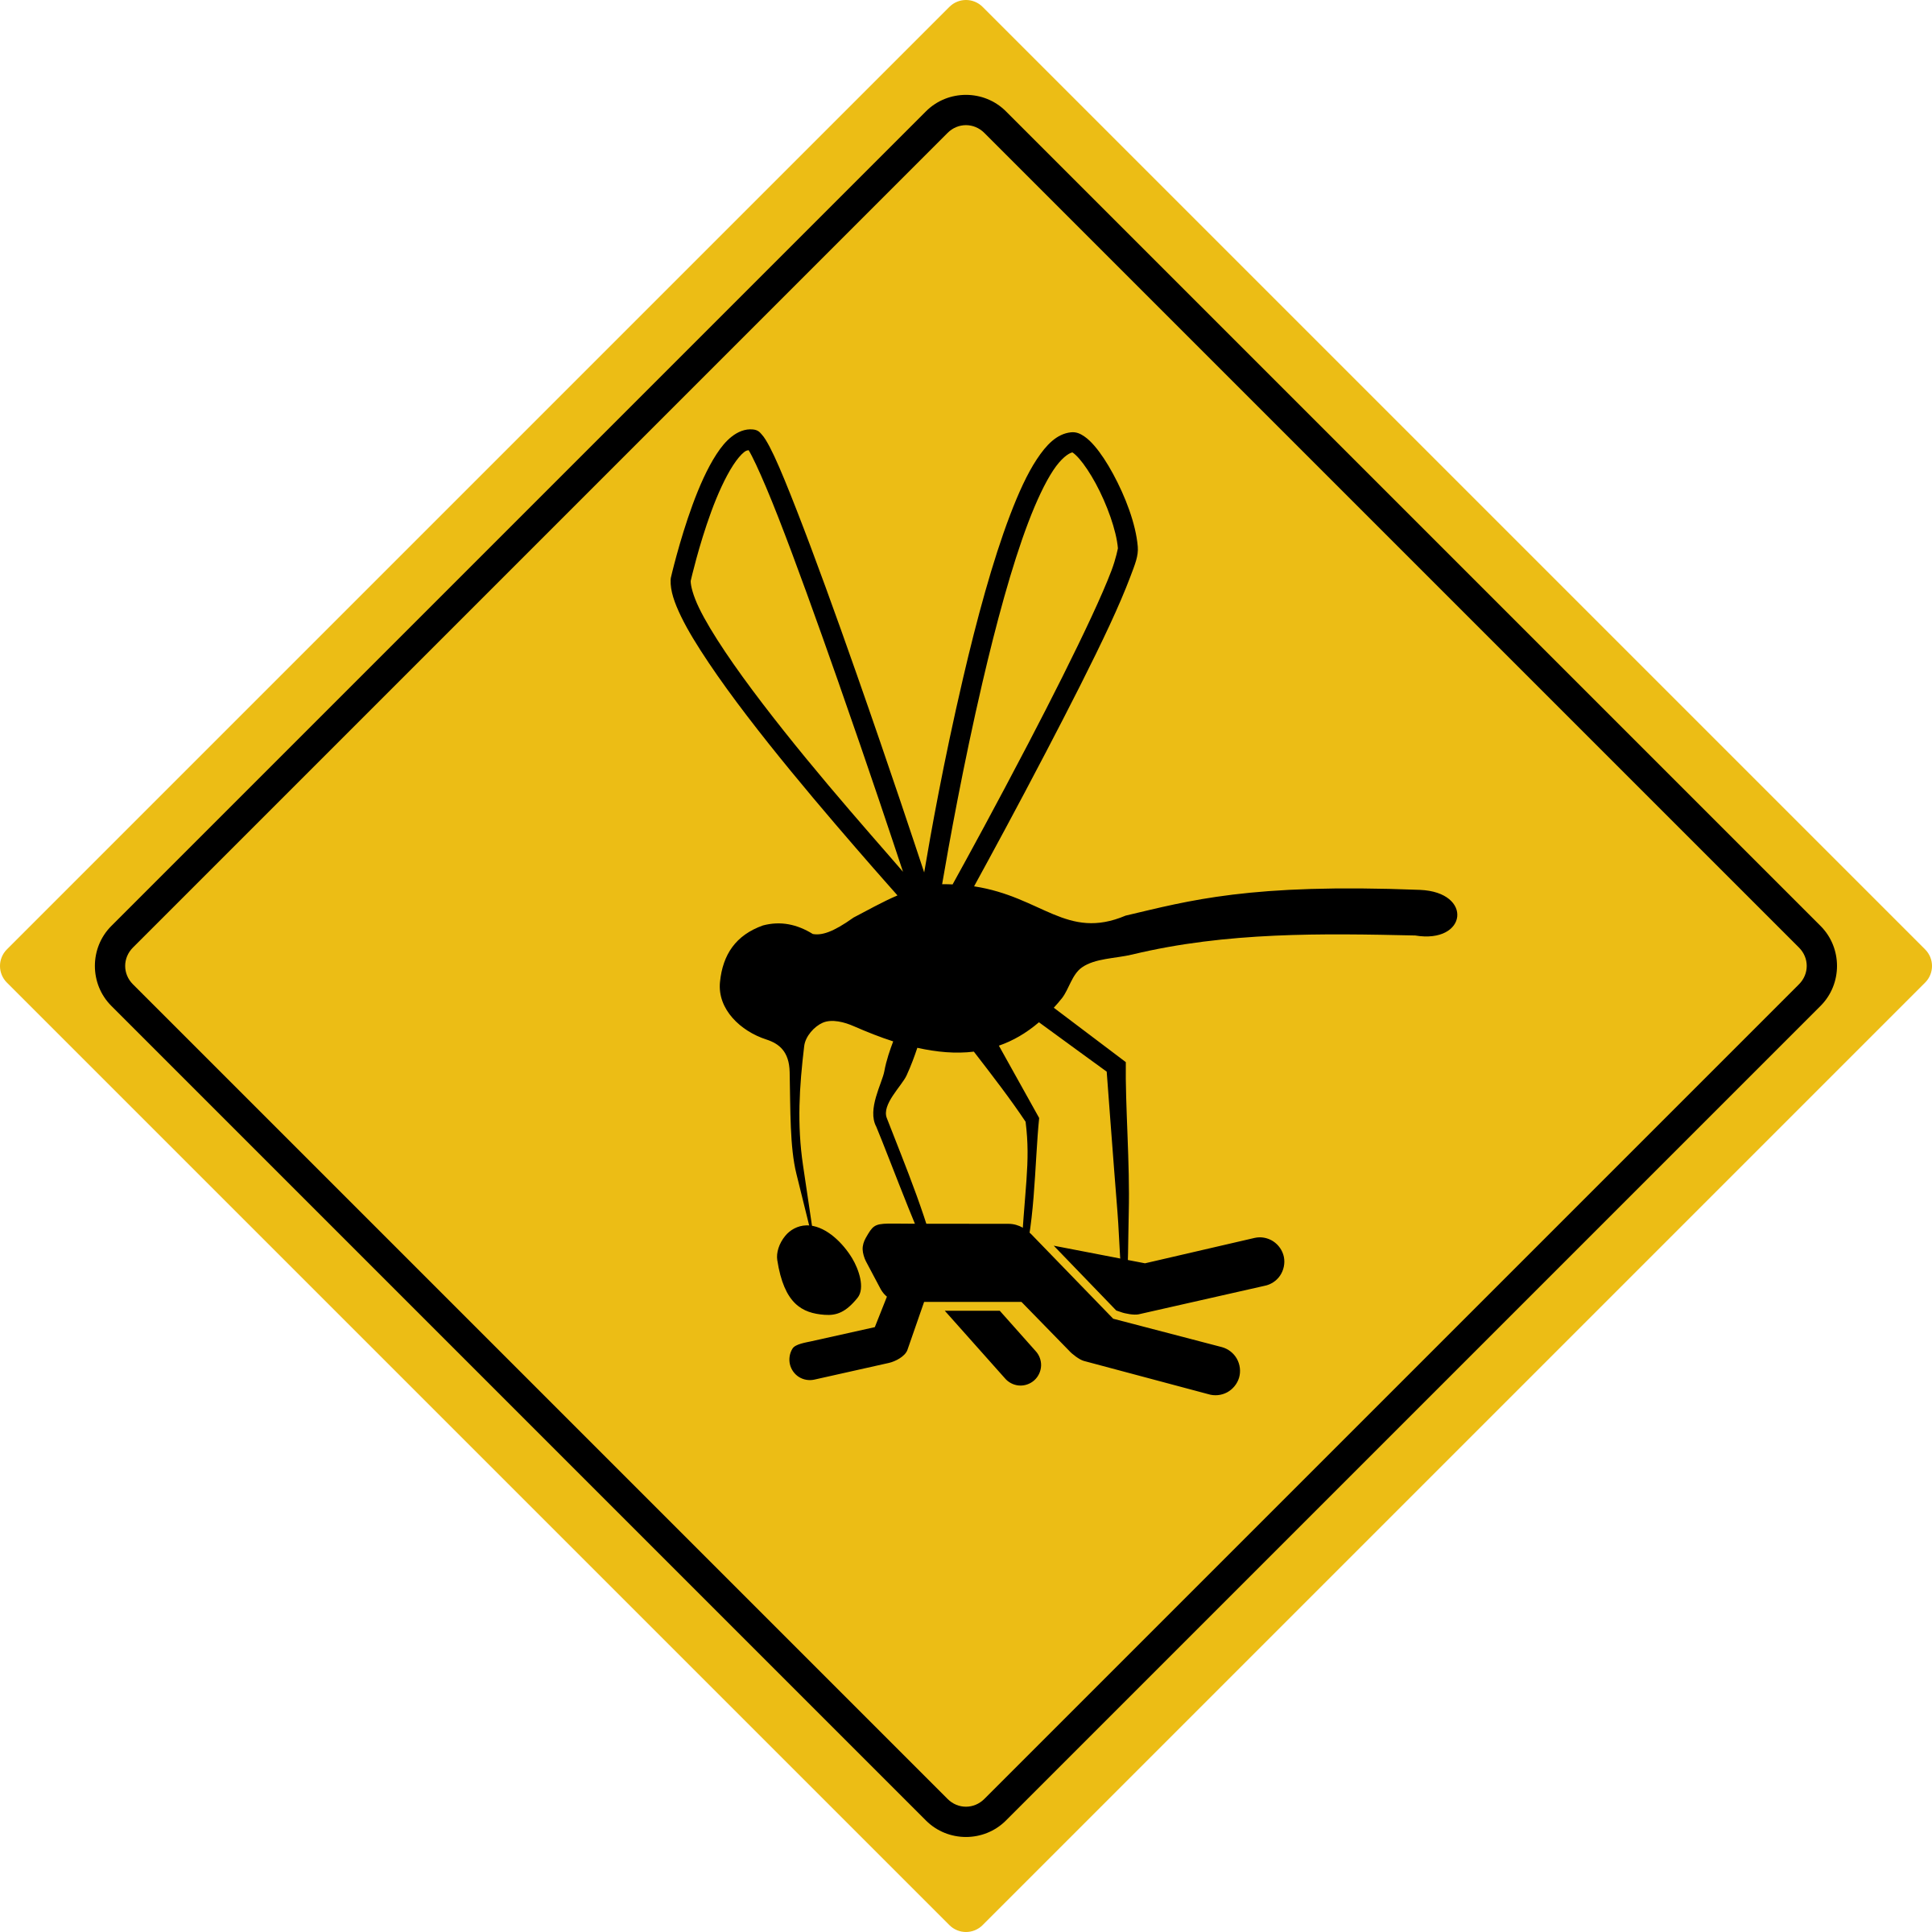 Clipart - Beware of gnats sign